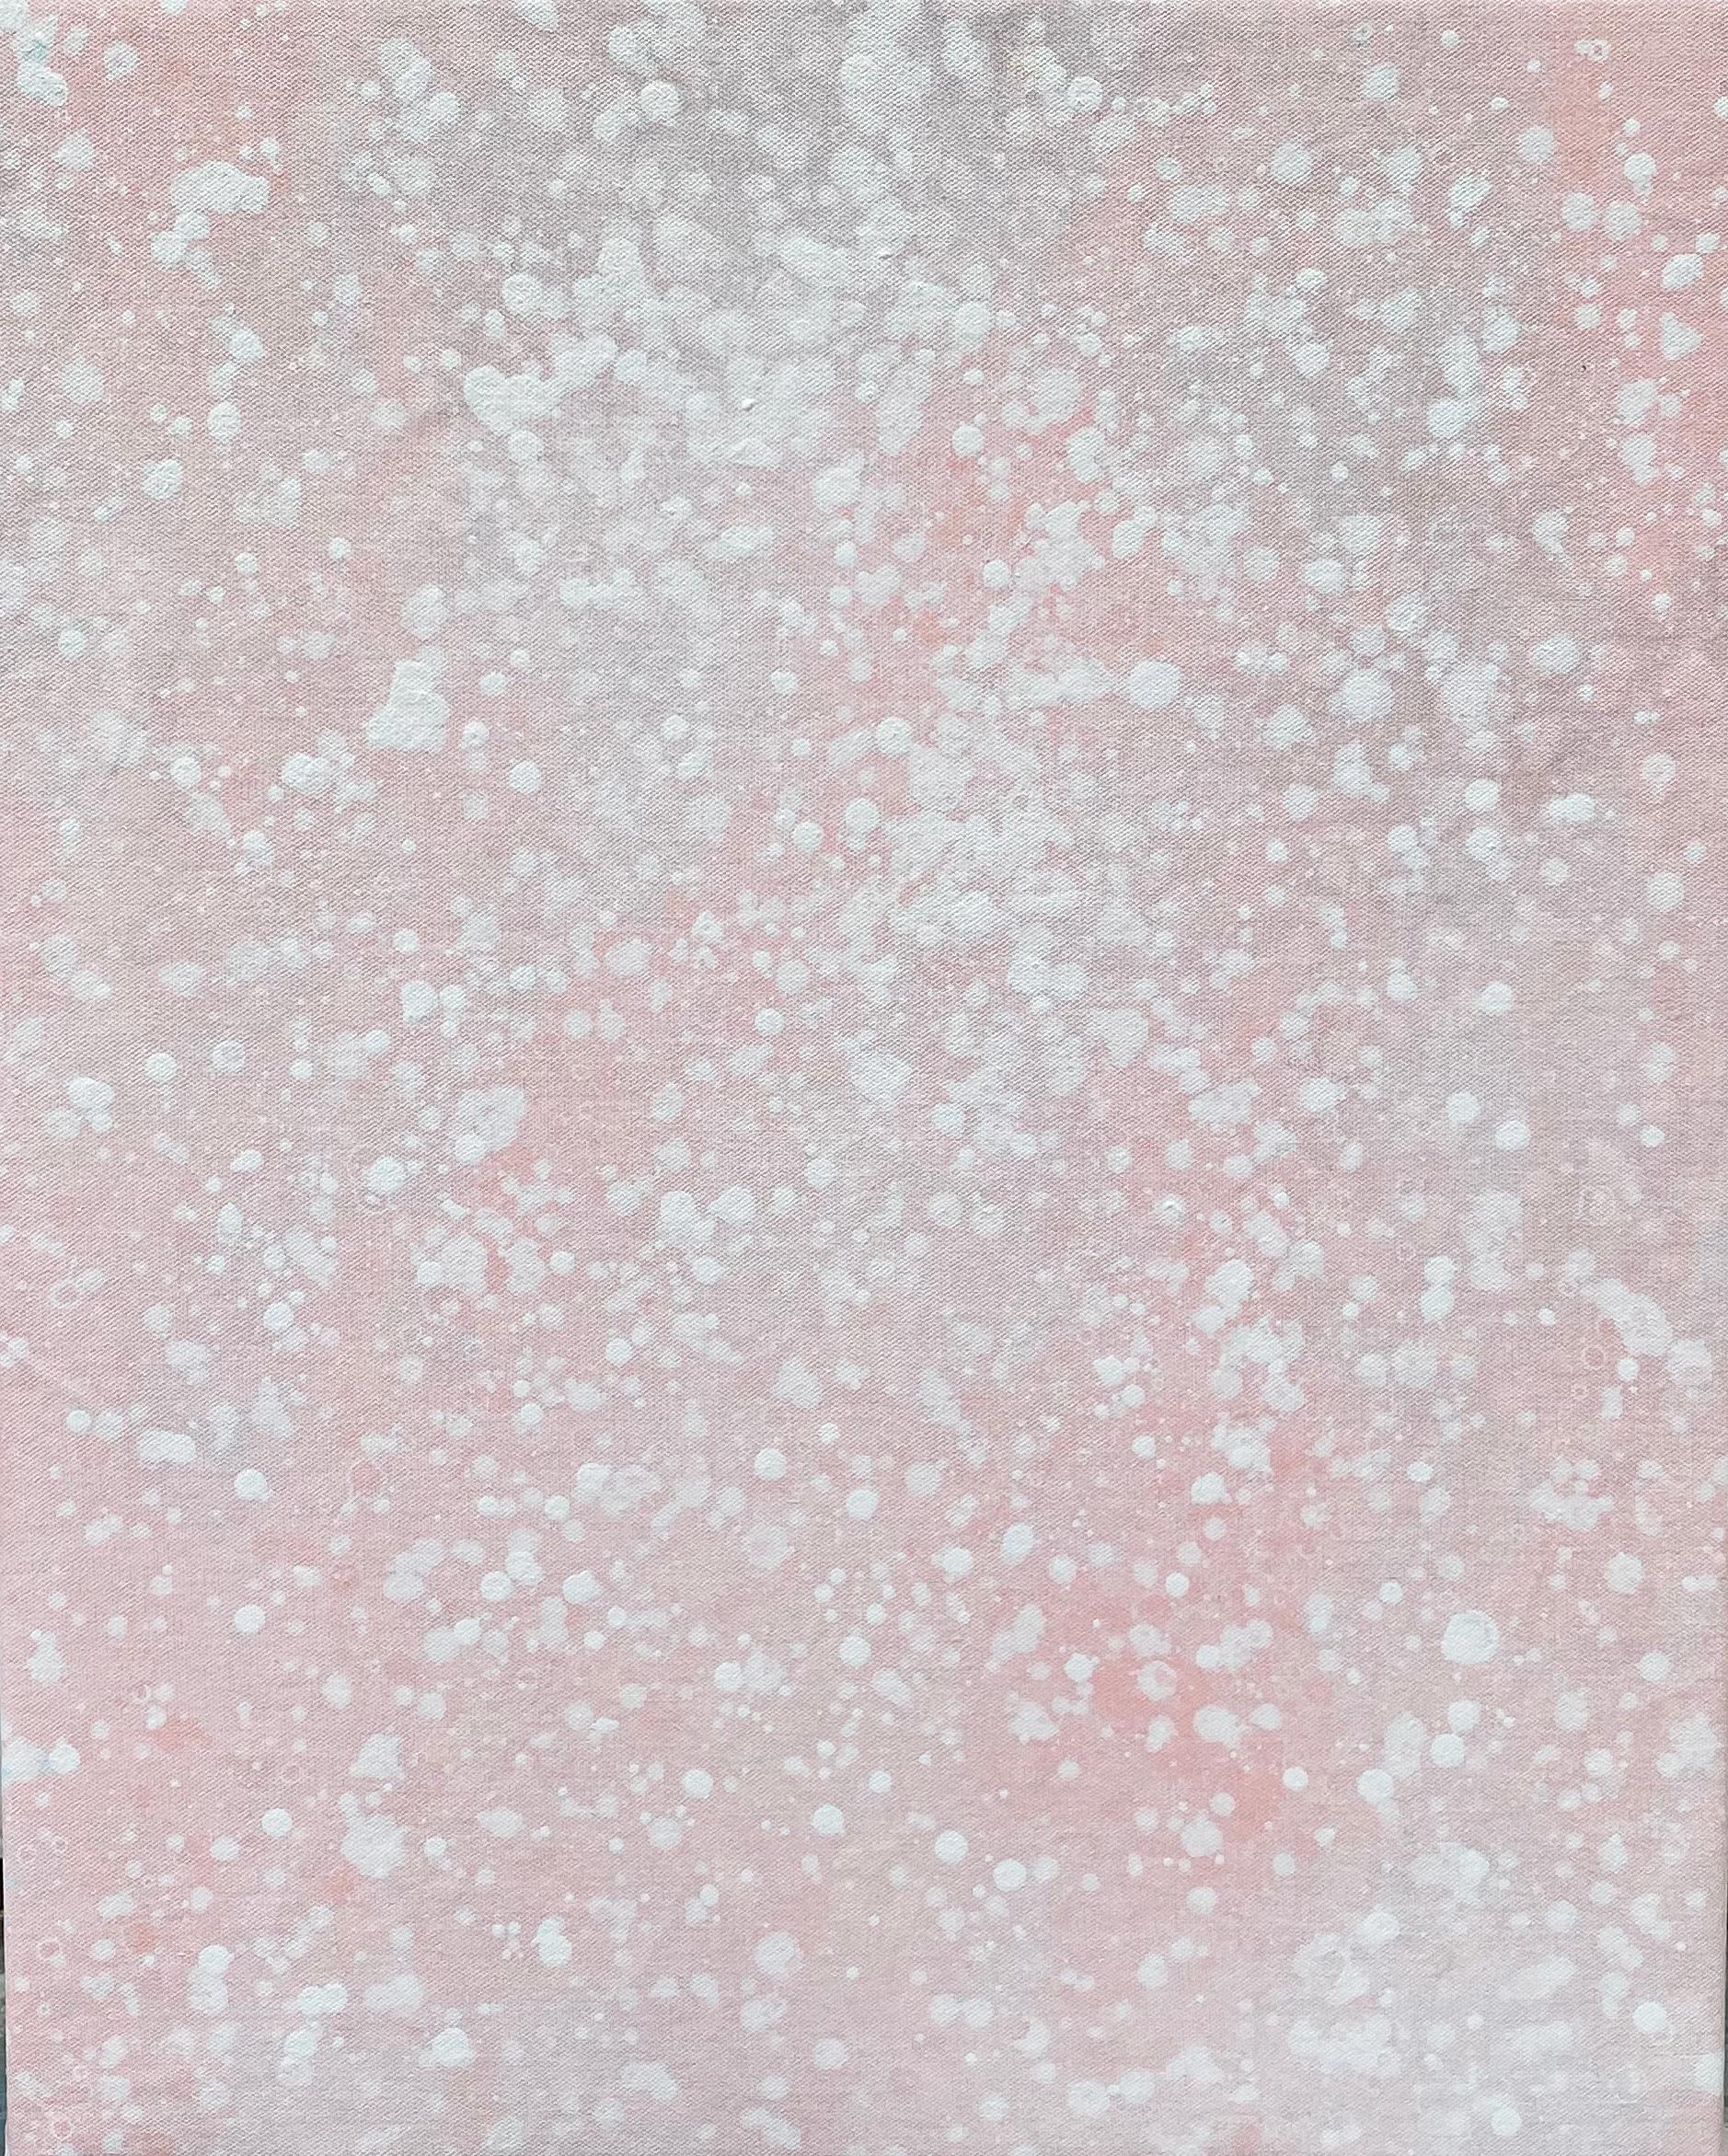 Kathleen Rhee Abstract Painting – Seine Schneewittchen-Pastell hellrosa Punkt abstrakte minimalistische expressionistische moderne Malerei